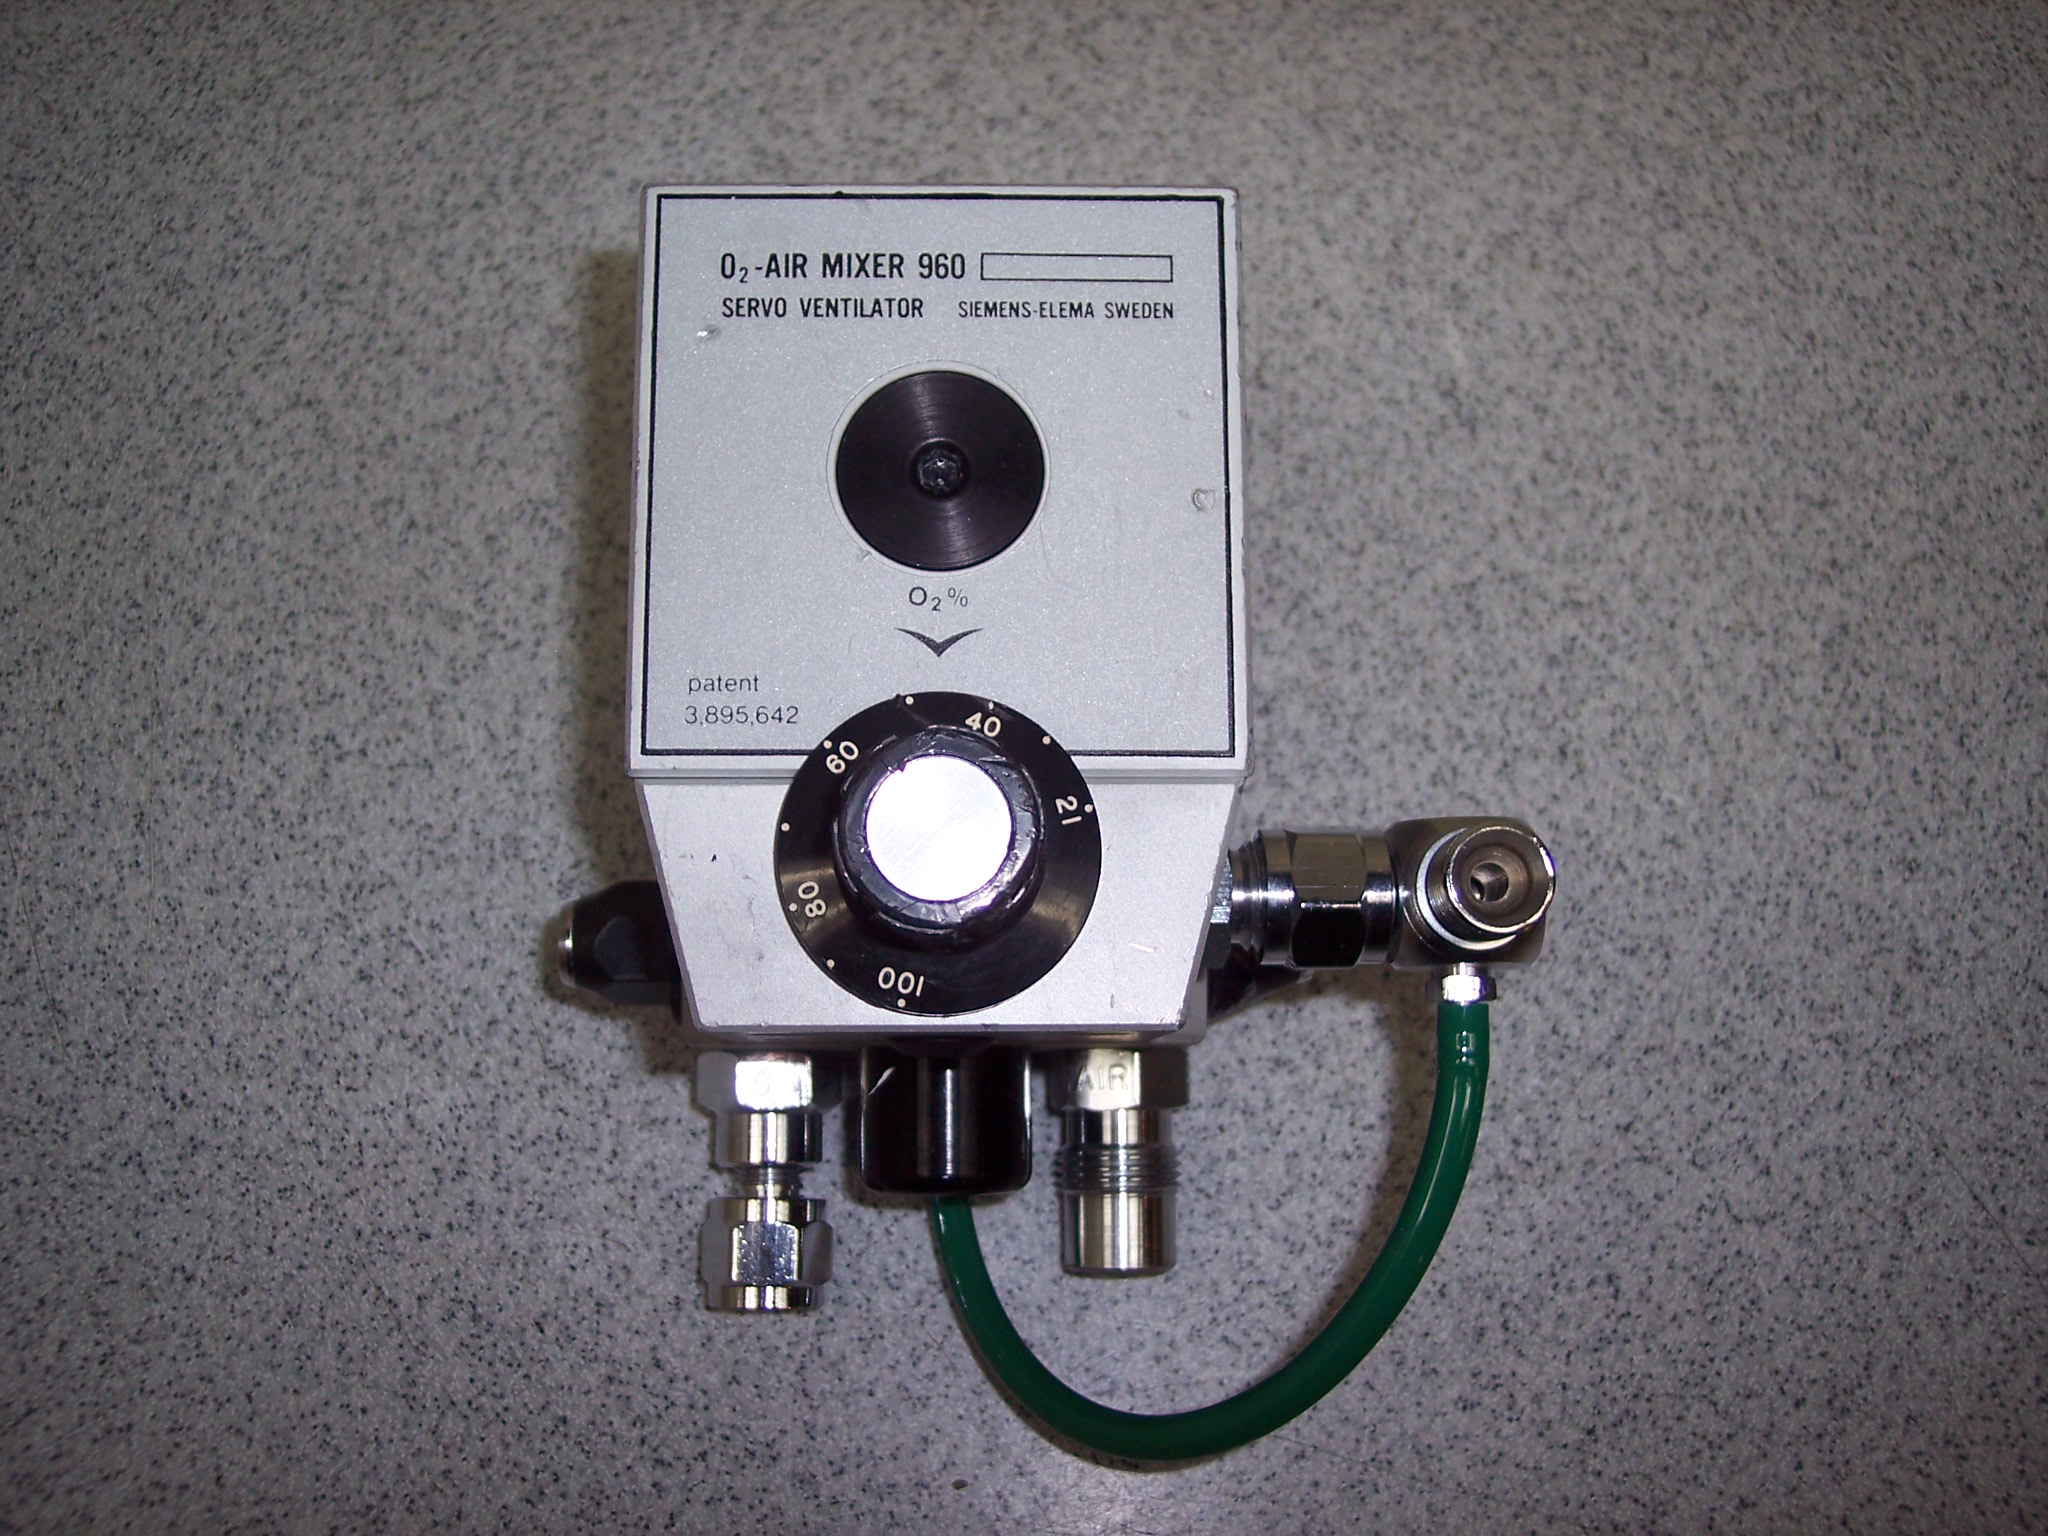 Siemens 960 O2-Air Mixer